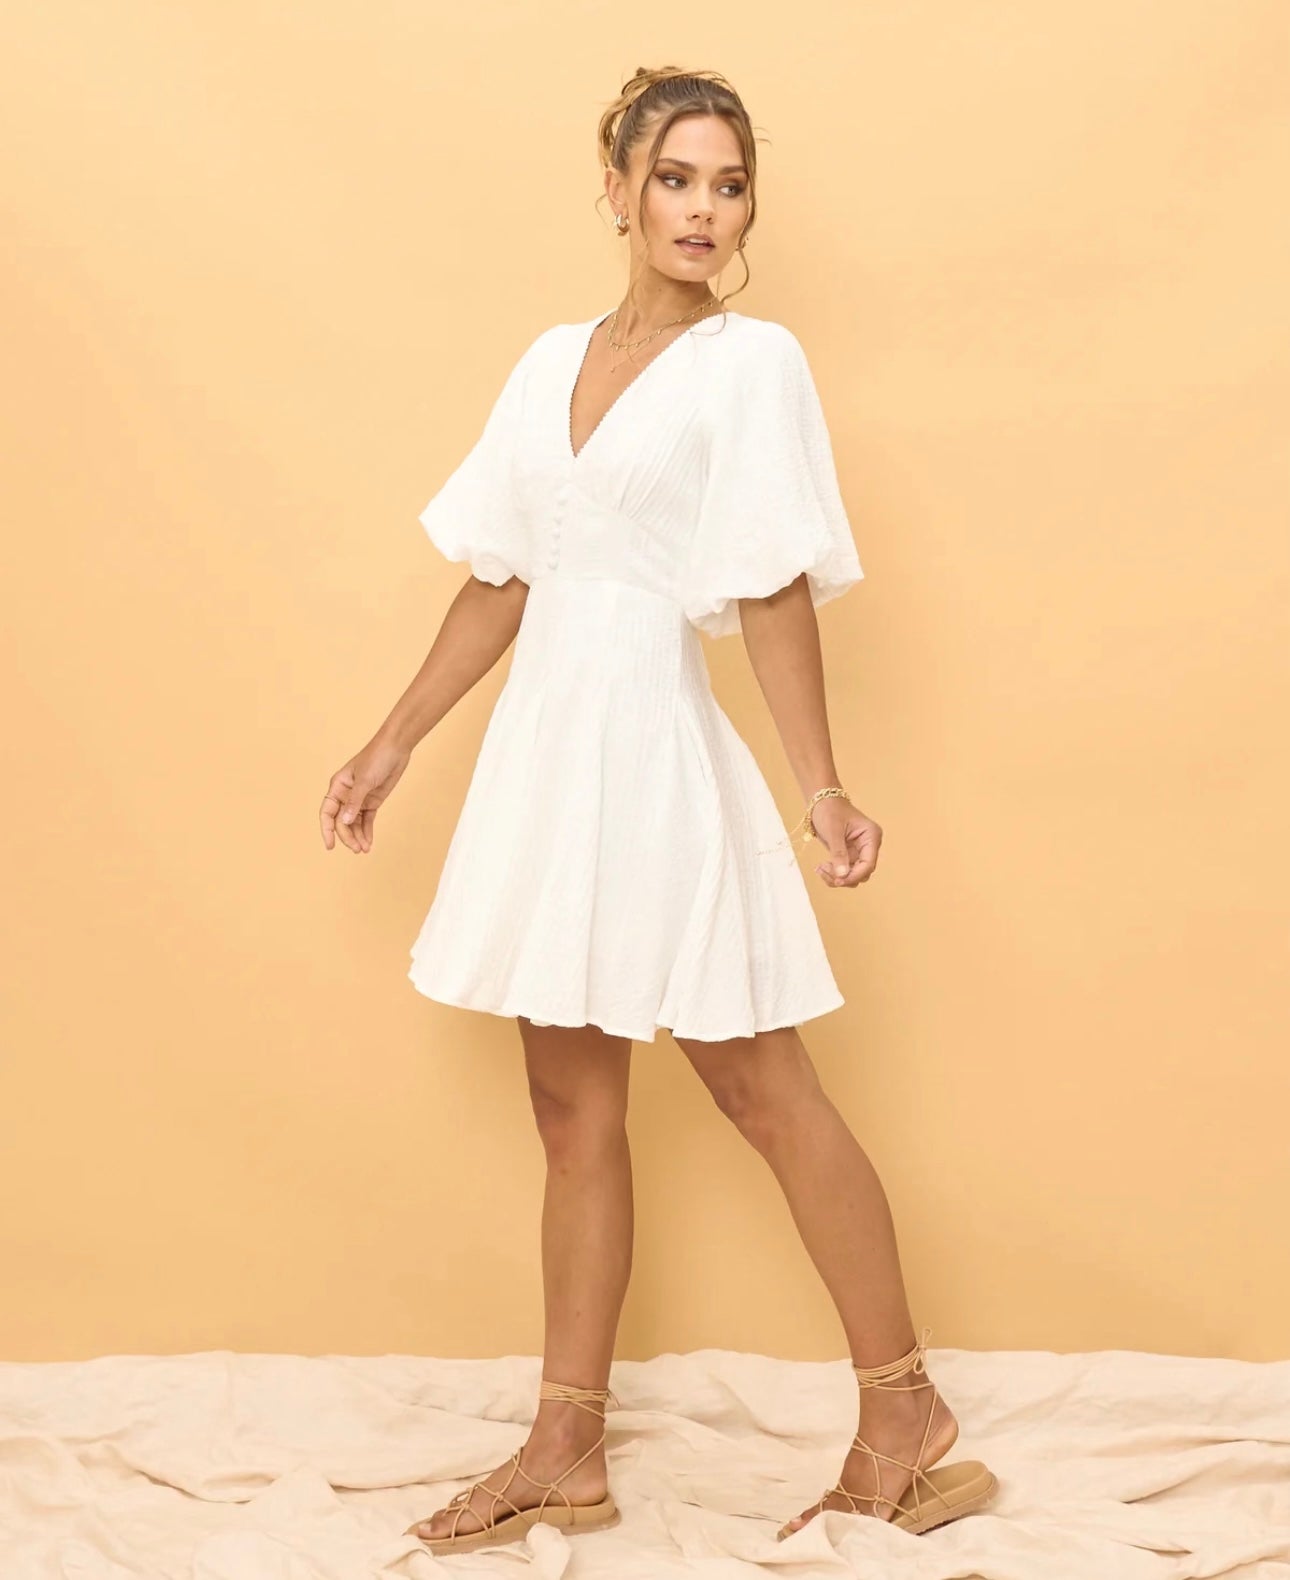 Lakeyo Wren White Godet Mini Dress